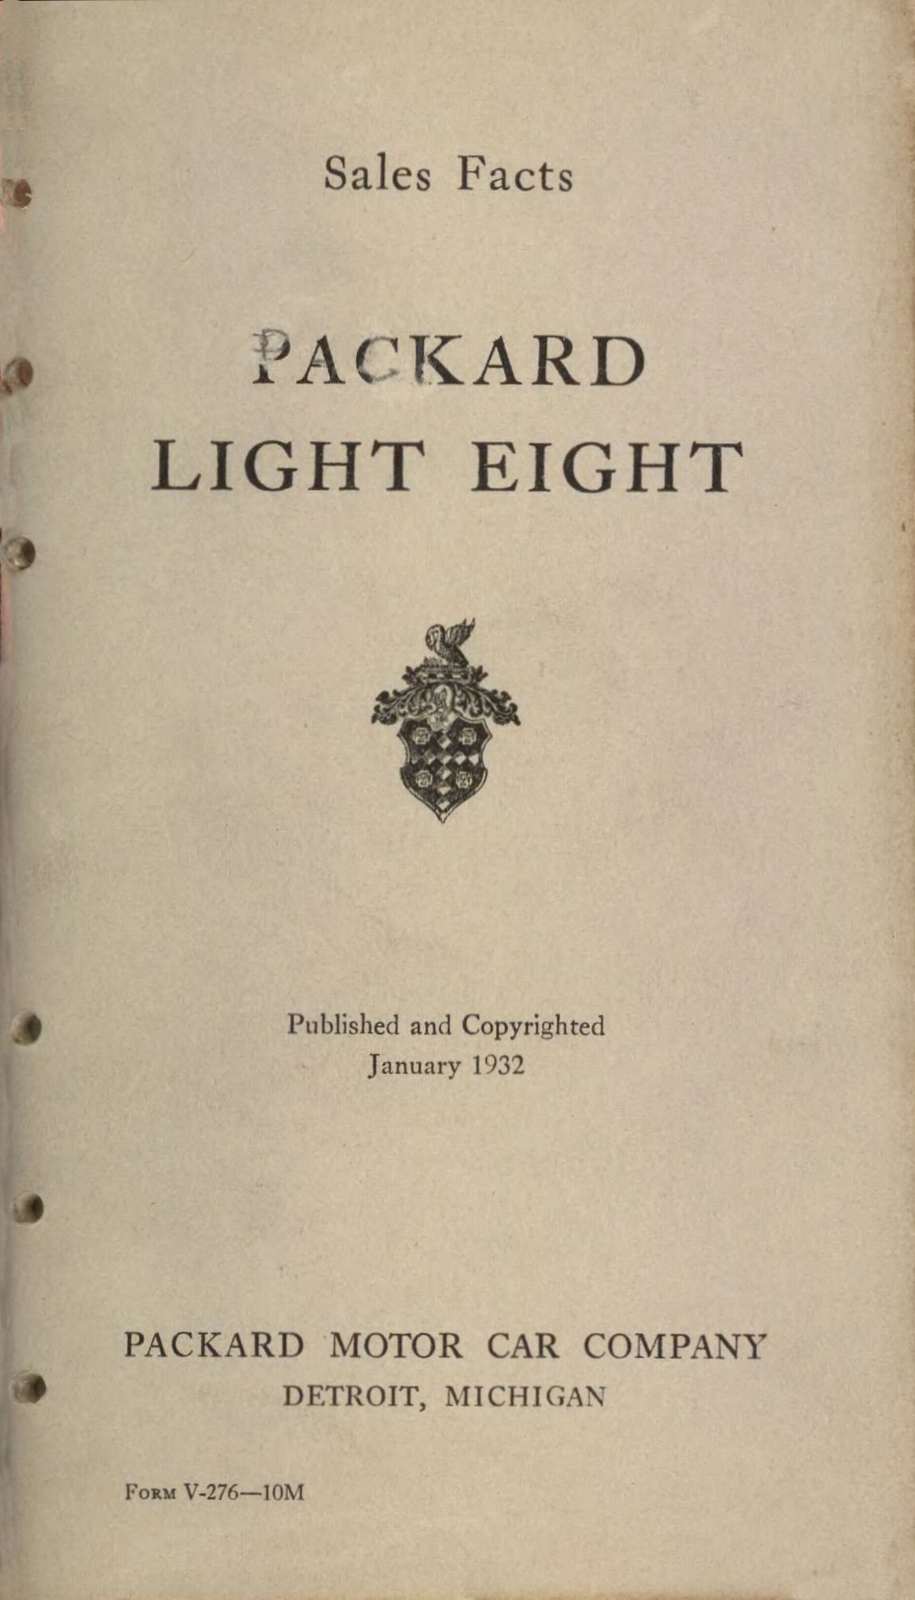 n_1932 Packard Light Eight Facts Book-00.jpg